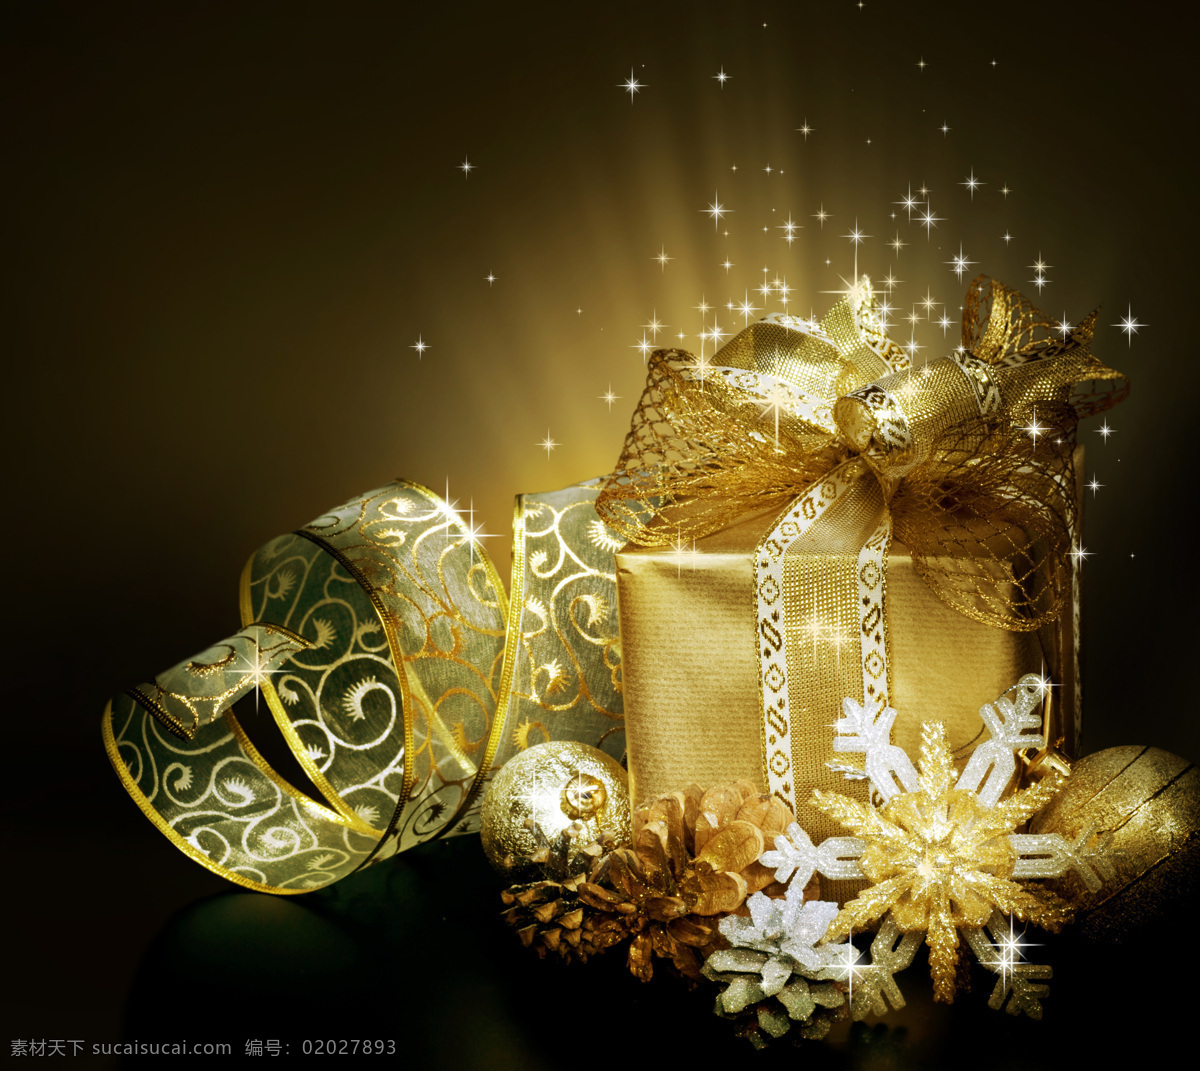 黄色 丝带 礼物 背景 圣诞节饰品 圣诞节背景 圣诞节素材 节日庆典 星光背景 礼盒 生活百科